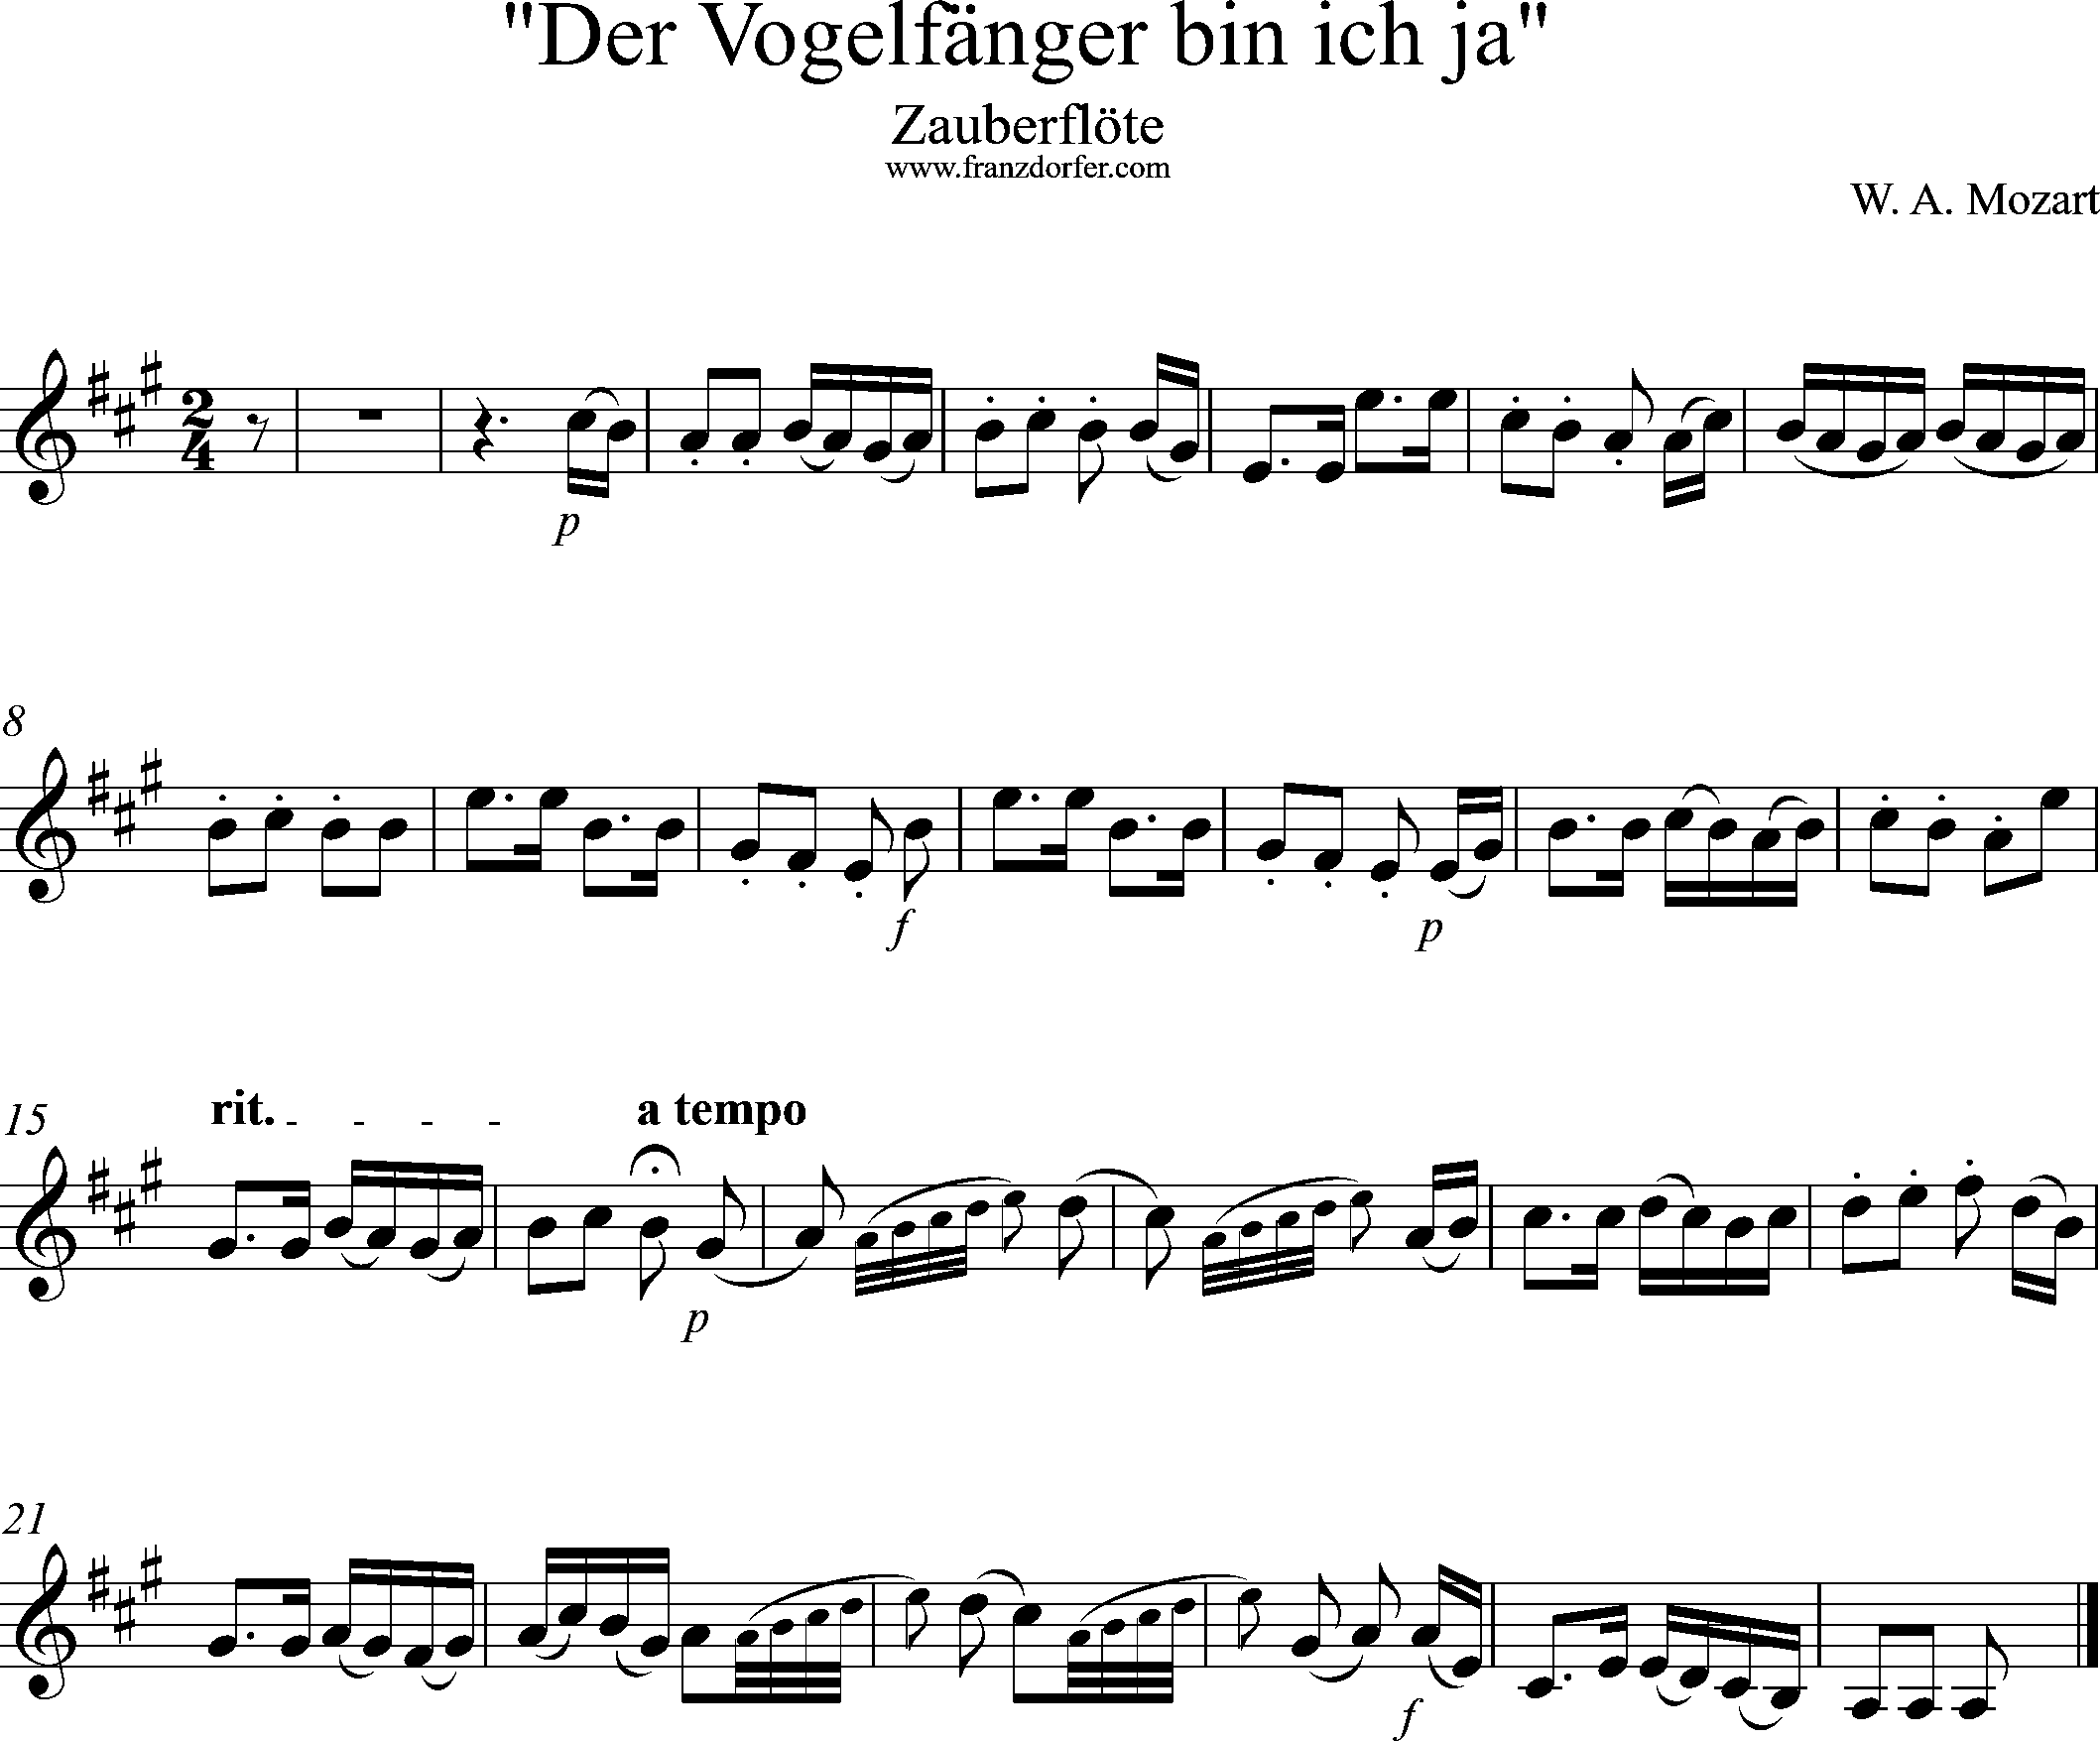 Uauberflöte, Vogelfängerlied, Solostimme, A-Dur